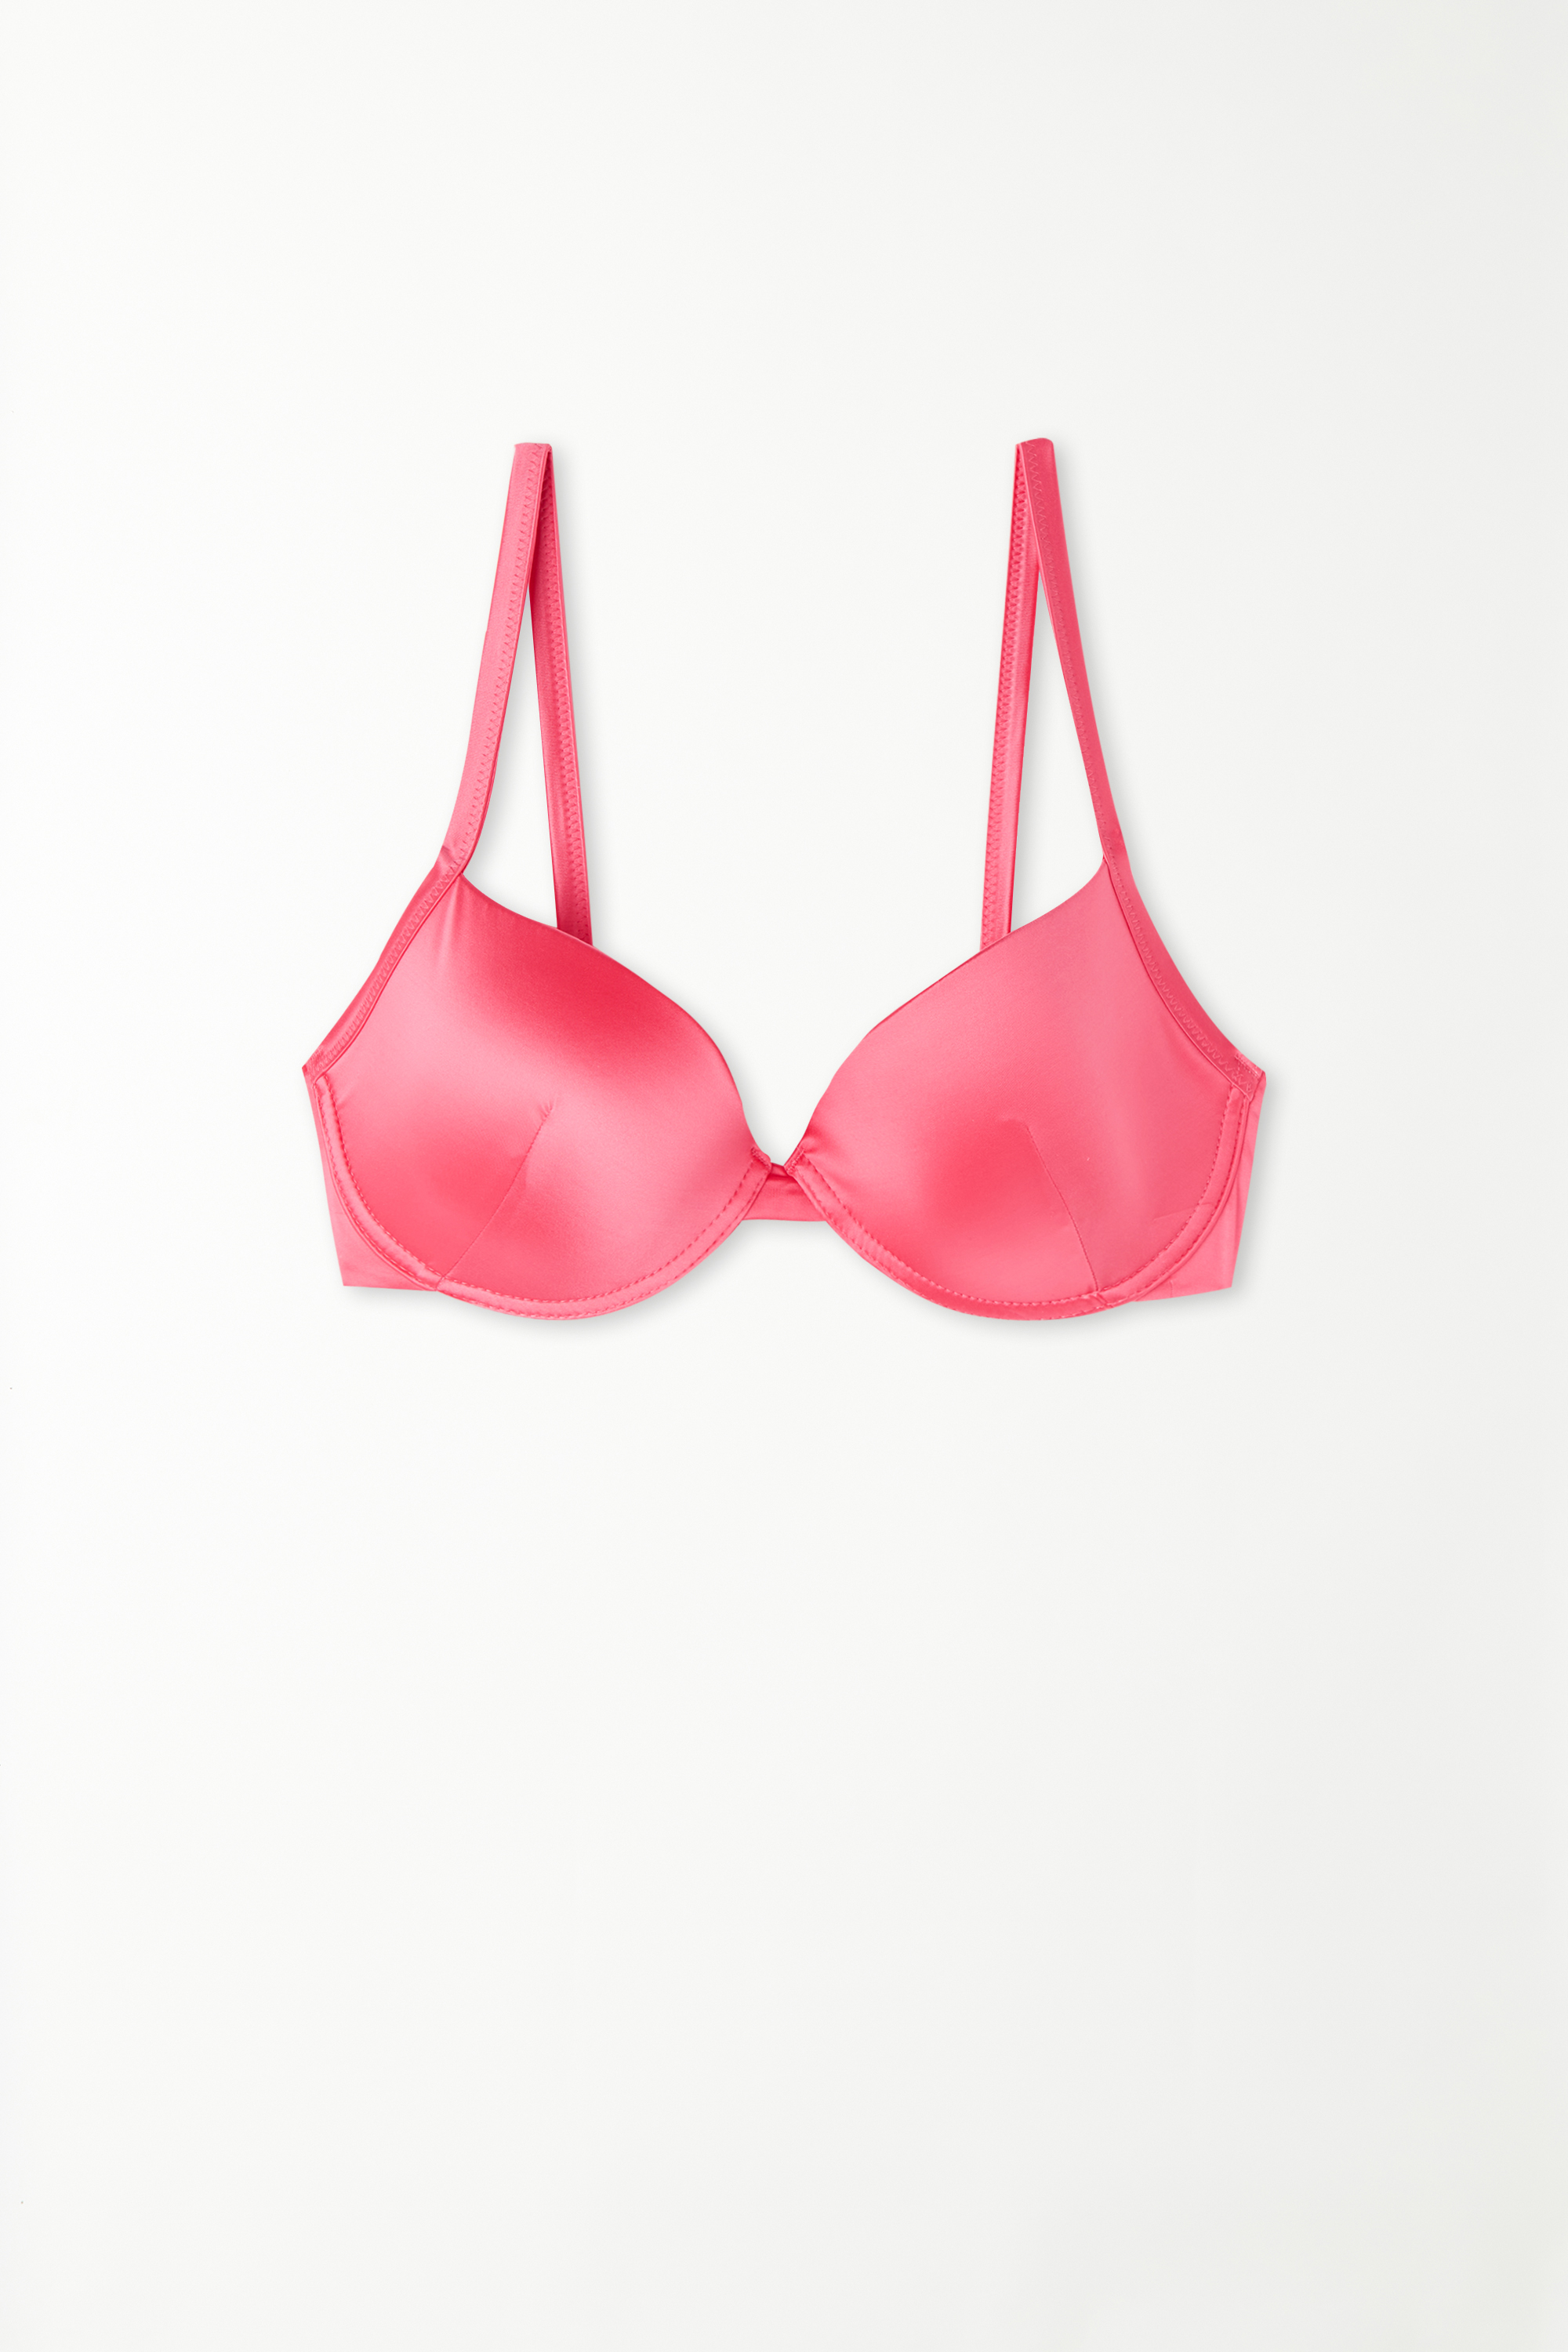 Gepolstertes, sommerlich rosafarbenes Push-up-Bikinioberteil Shiny